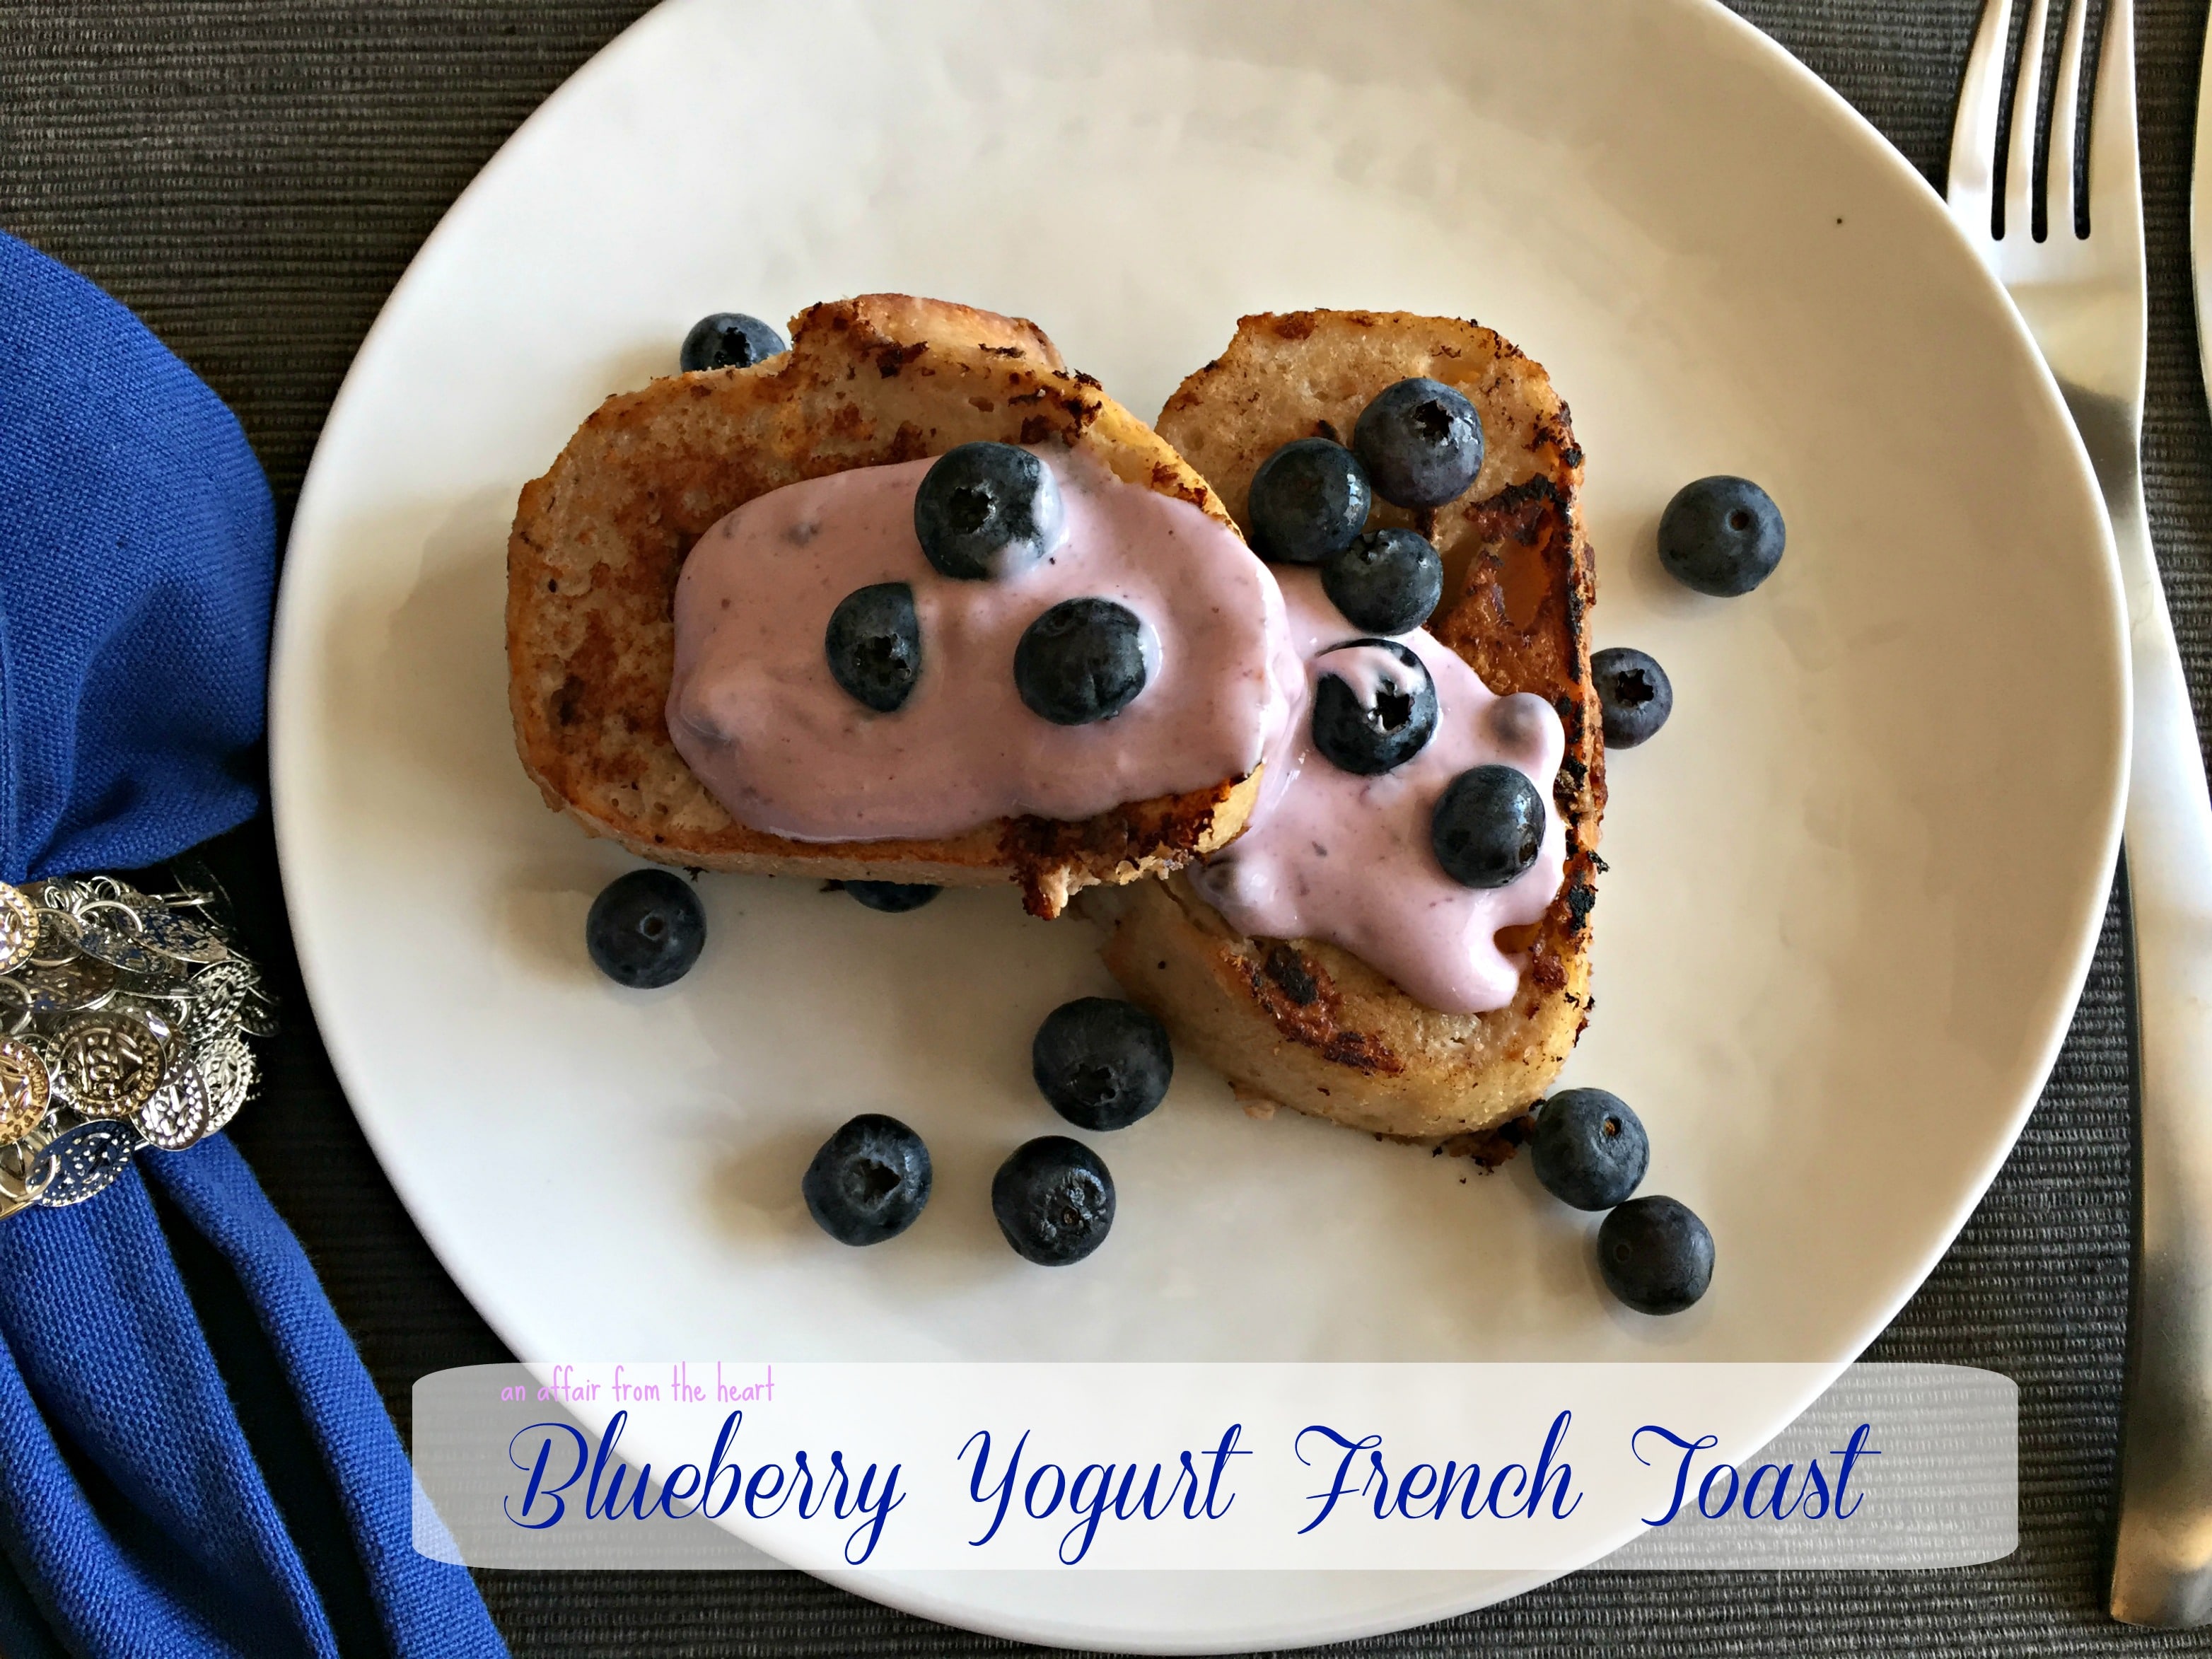 Blueberry Yogurt French Toast